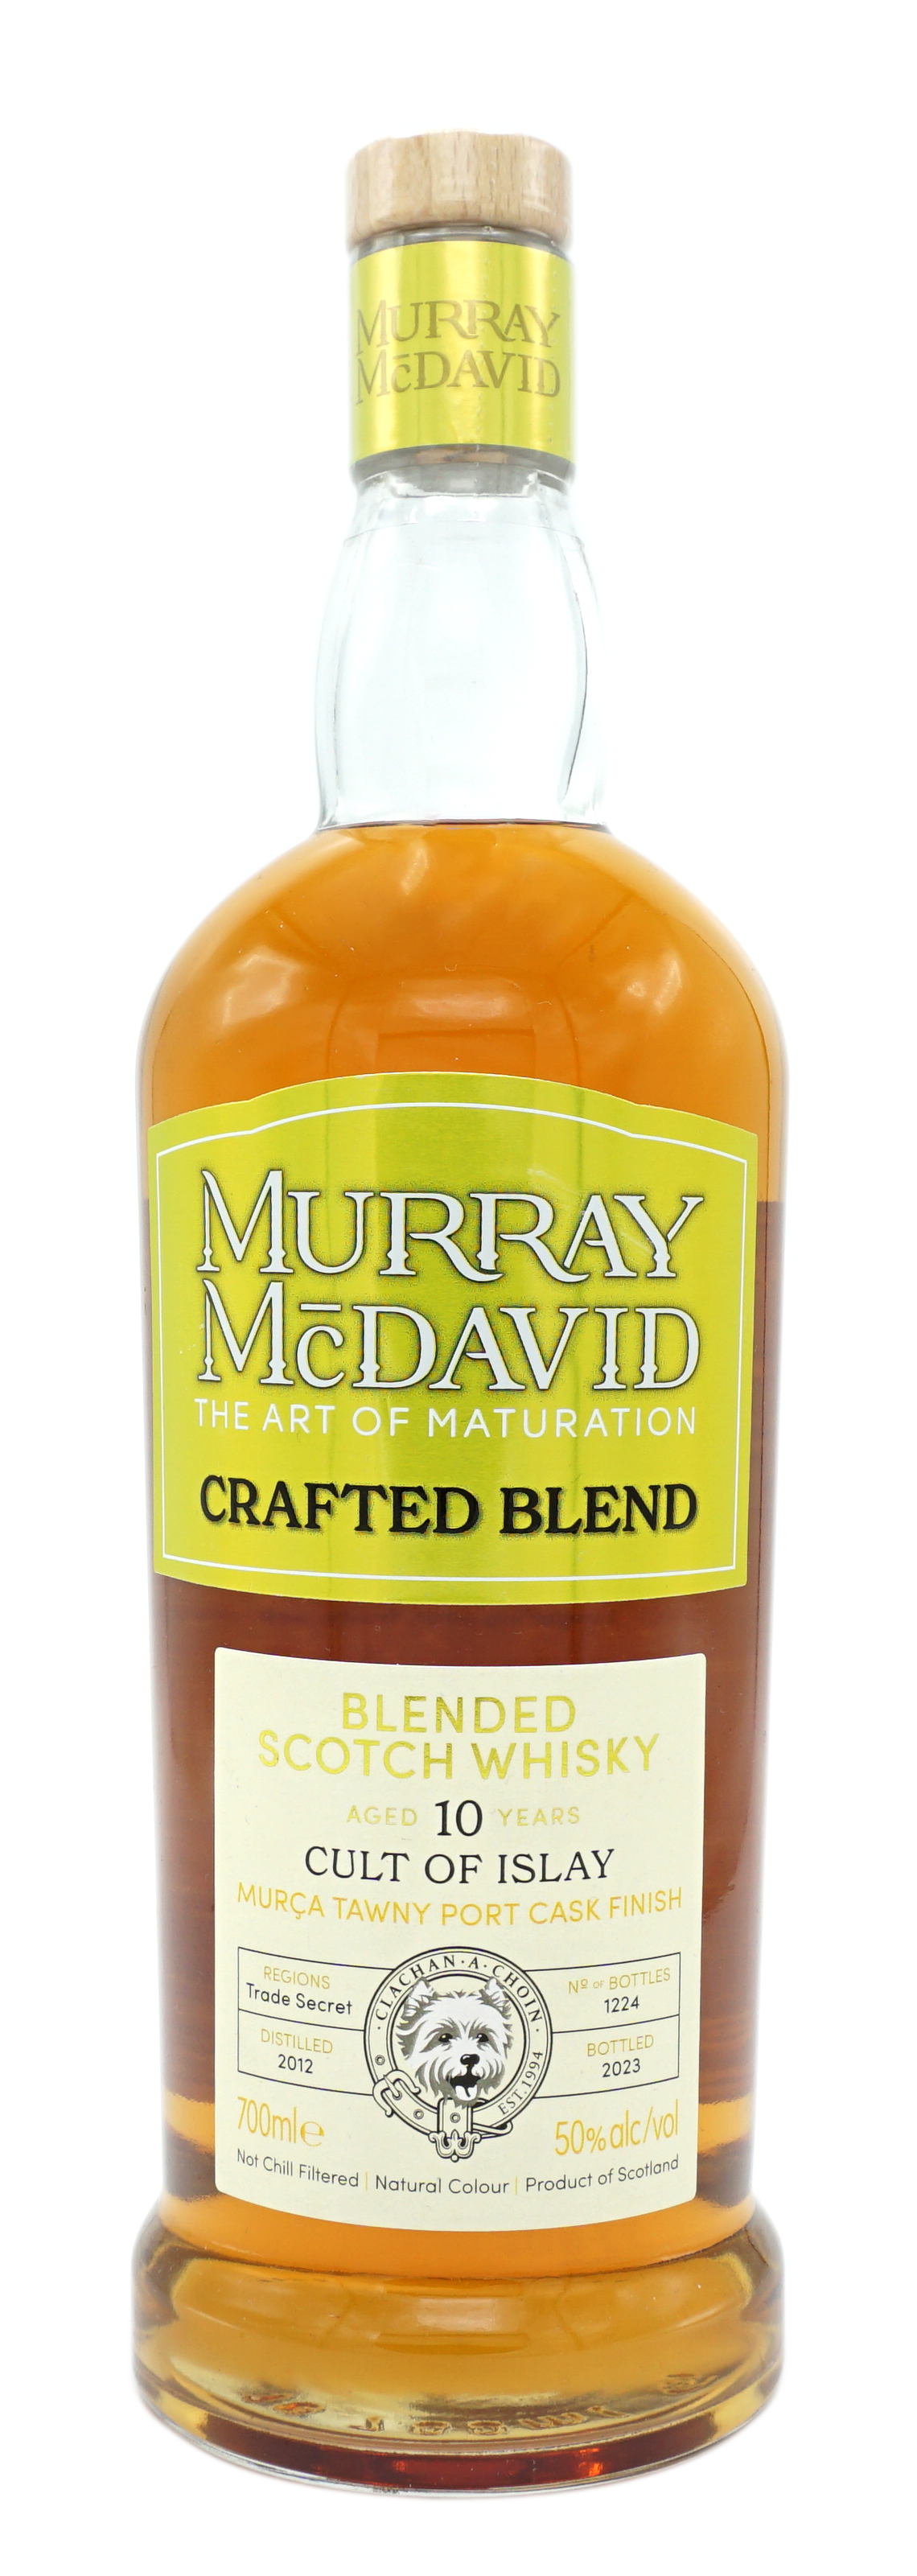 MurrayMcDavid CraftedBlend CultOfIslay TawnyPortFinish 10y 50% Fles